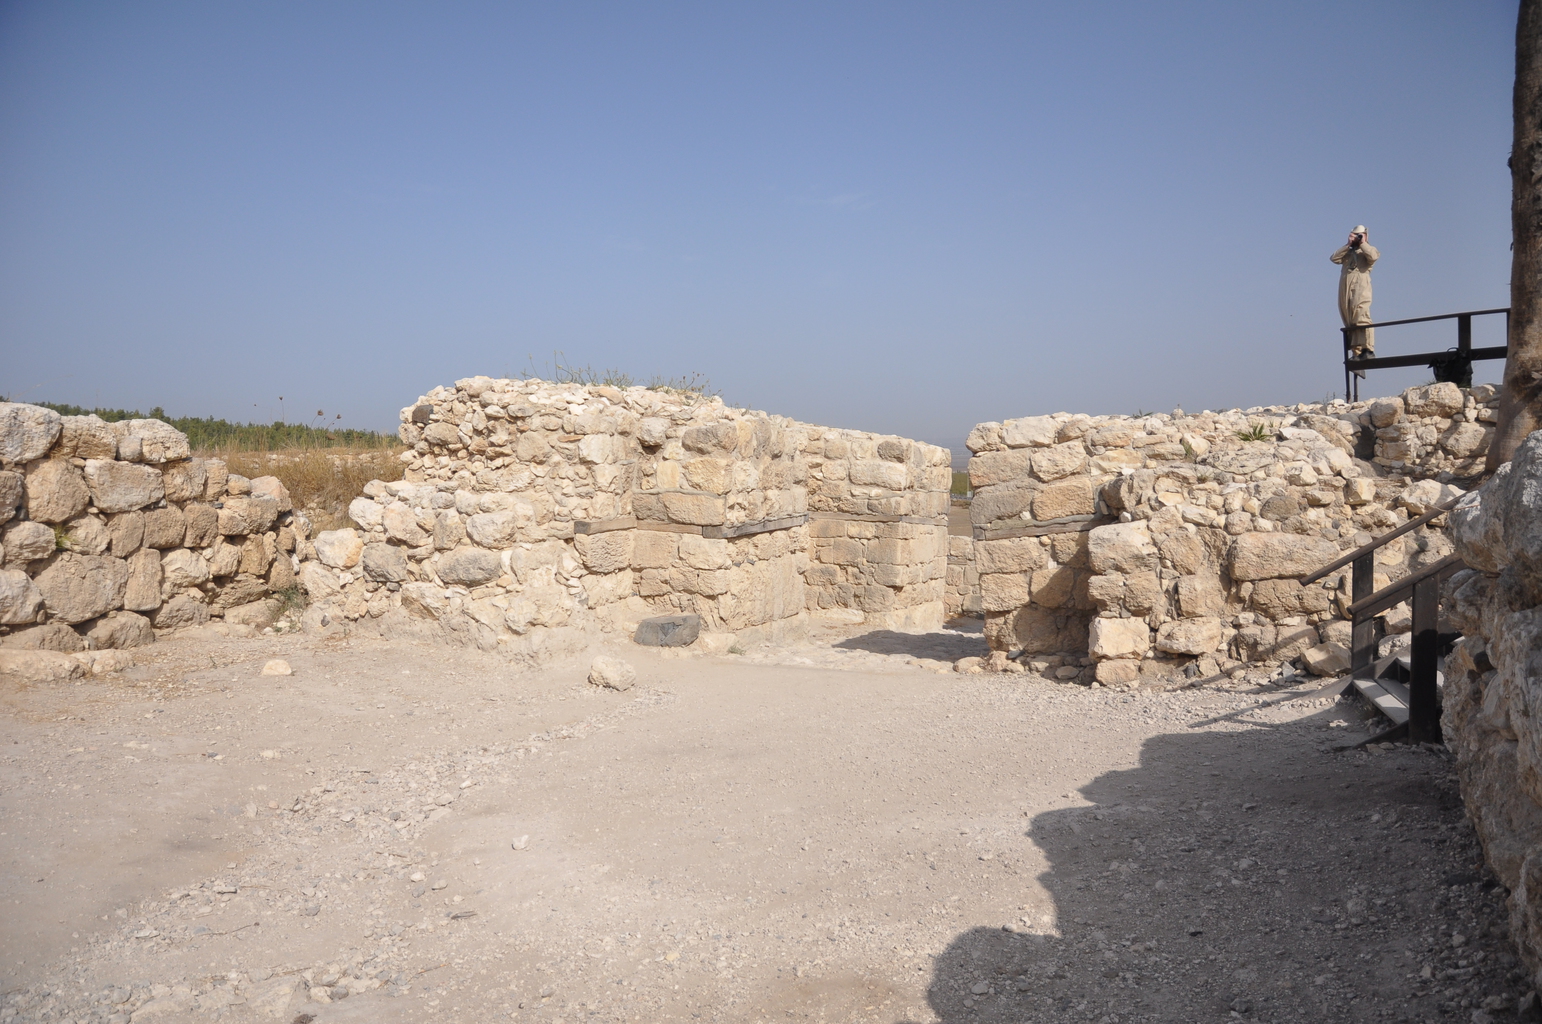 Ханаанские ворота периода поздней бронзы и площадь перед ними (вид изнутри)